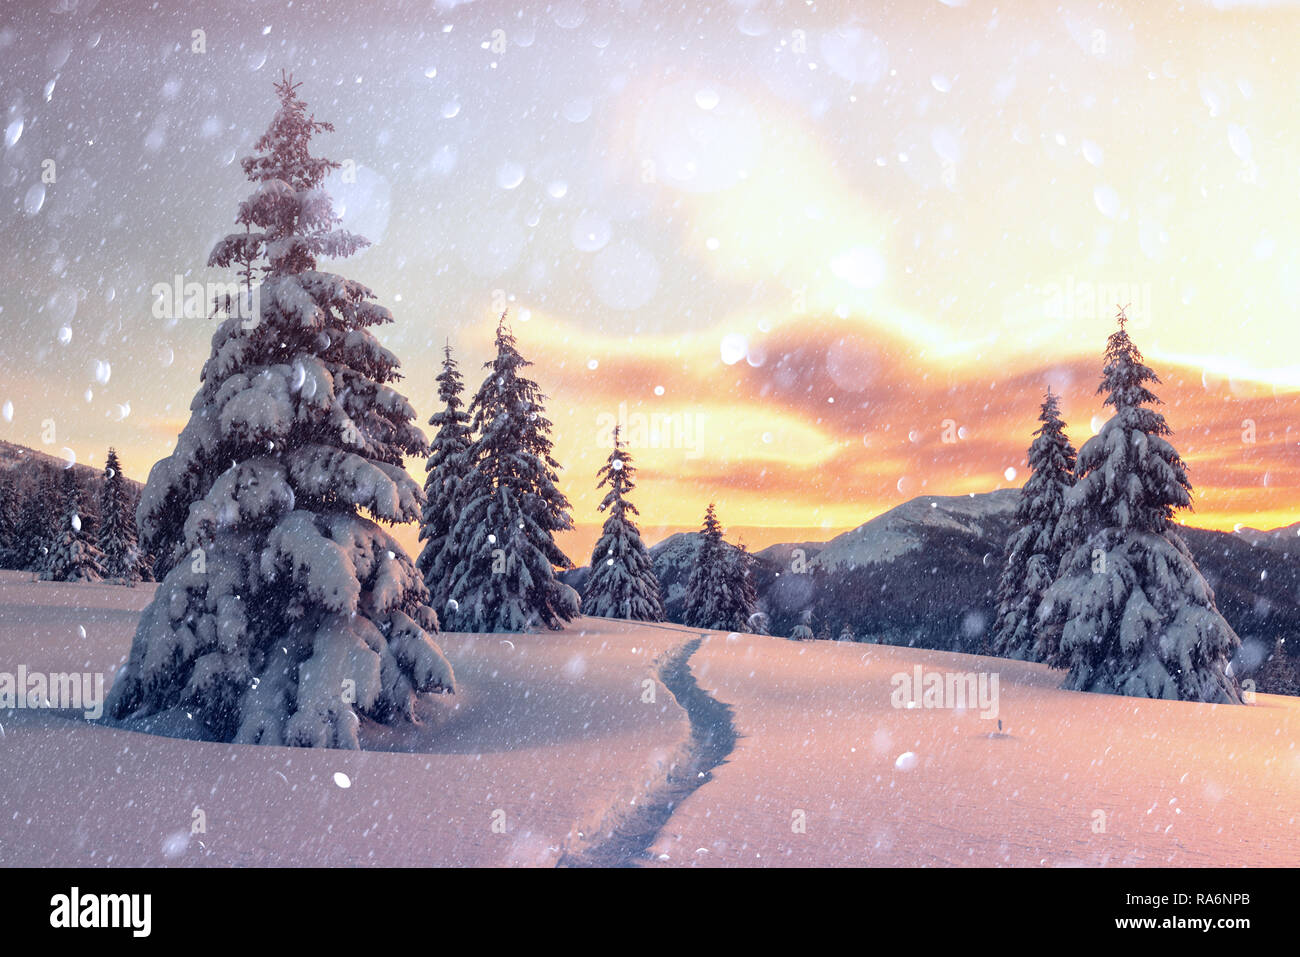 Orange fantastique paysage d'hiver dans les montagnes de neige par la lumière du soleil rougeoyant. Scène hivernale spectaculaire avec des arbres enneigés. Lumière effet bokeh DOF post-traitement. Vacances de Noël collage Banque D'Images